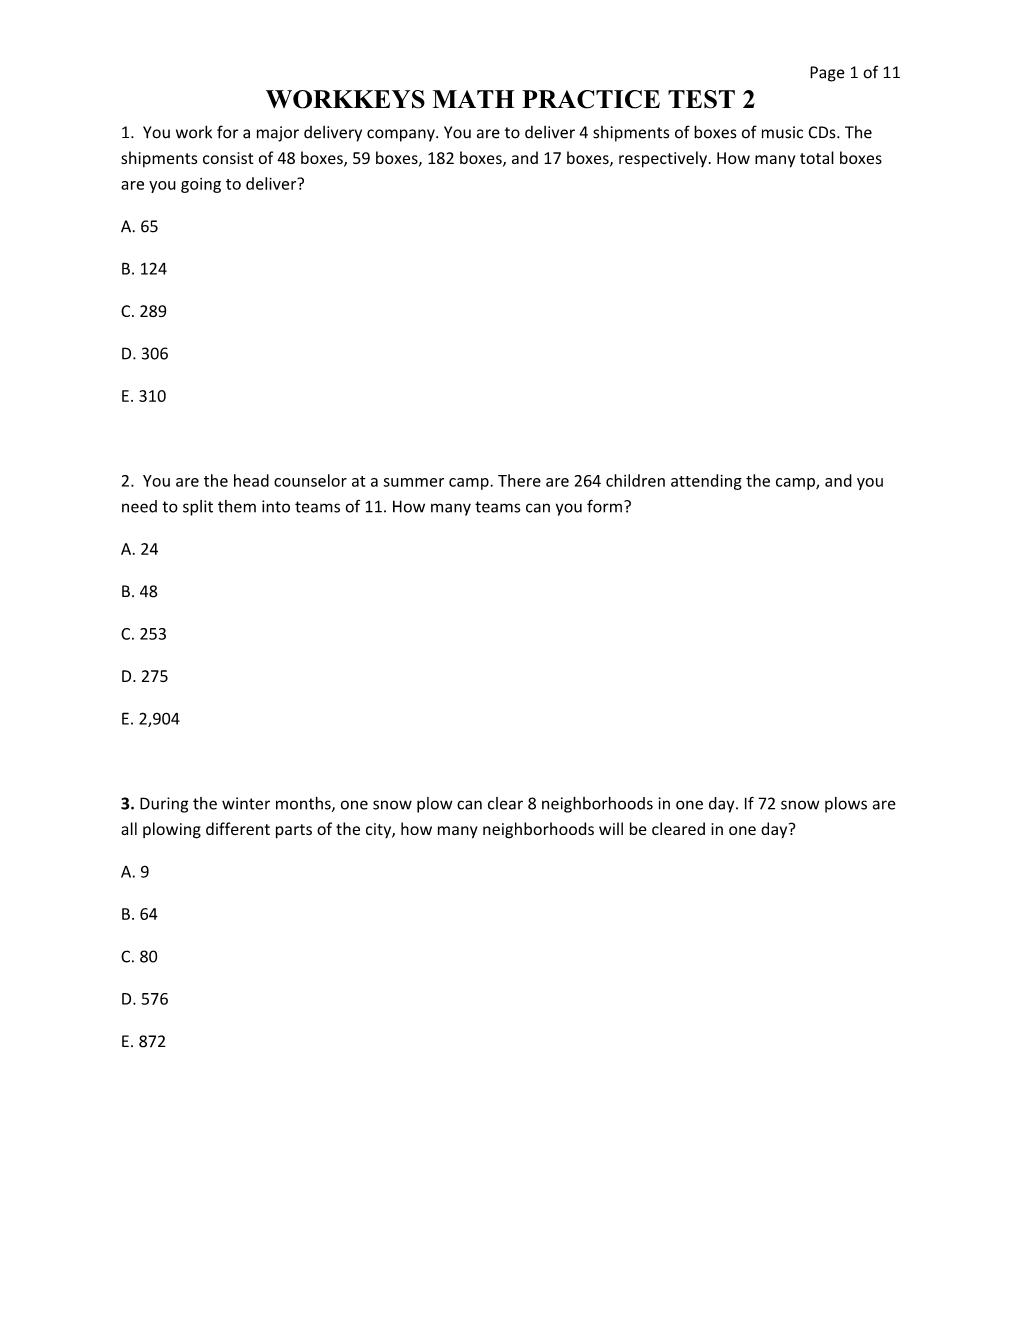 Workkeys Math Practice Test 2